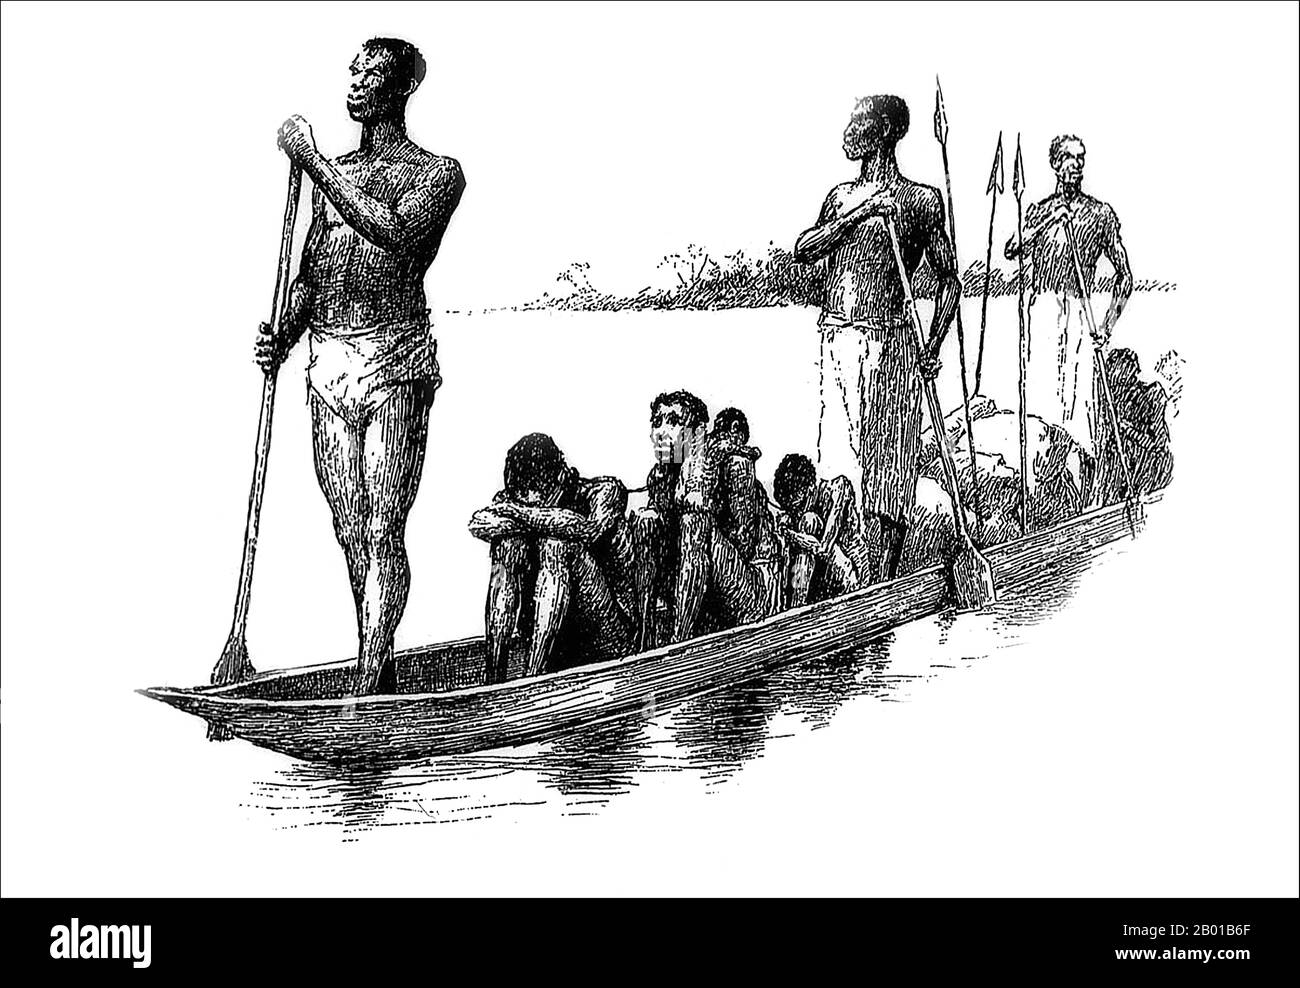 Afrique centrale : les esclaves capturés sont transportés en canoë sur une rivière. Illustration par Edward Winsor Kemble (18 janvier 1861 - 19 septembre 1933), 1880s. Les esclaves noirs ont été importés dans le monde musulman d'Afrique par un certain nombre de routes vers le nord à travers le désert du Sahara, et par la mer vers l'Arabie et le golfe Persique. Les estimations du nombre de personnes concernées varient grandement, mais il semble qu'il y ait eu facilement 10 millions, peut-être même deux fois ce nombre. Les deux tiers des esclaves africains étaient des femmes. Les hommes étaient considérés comme gênants. Banque D'Images